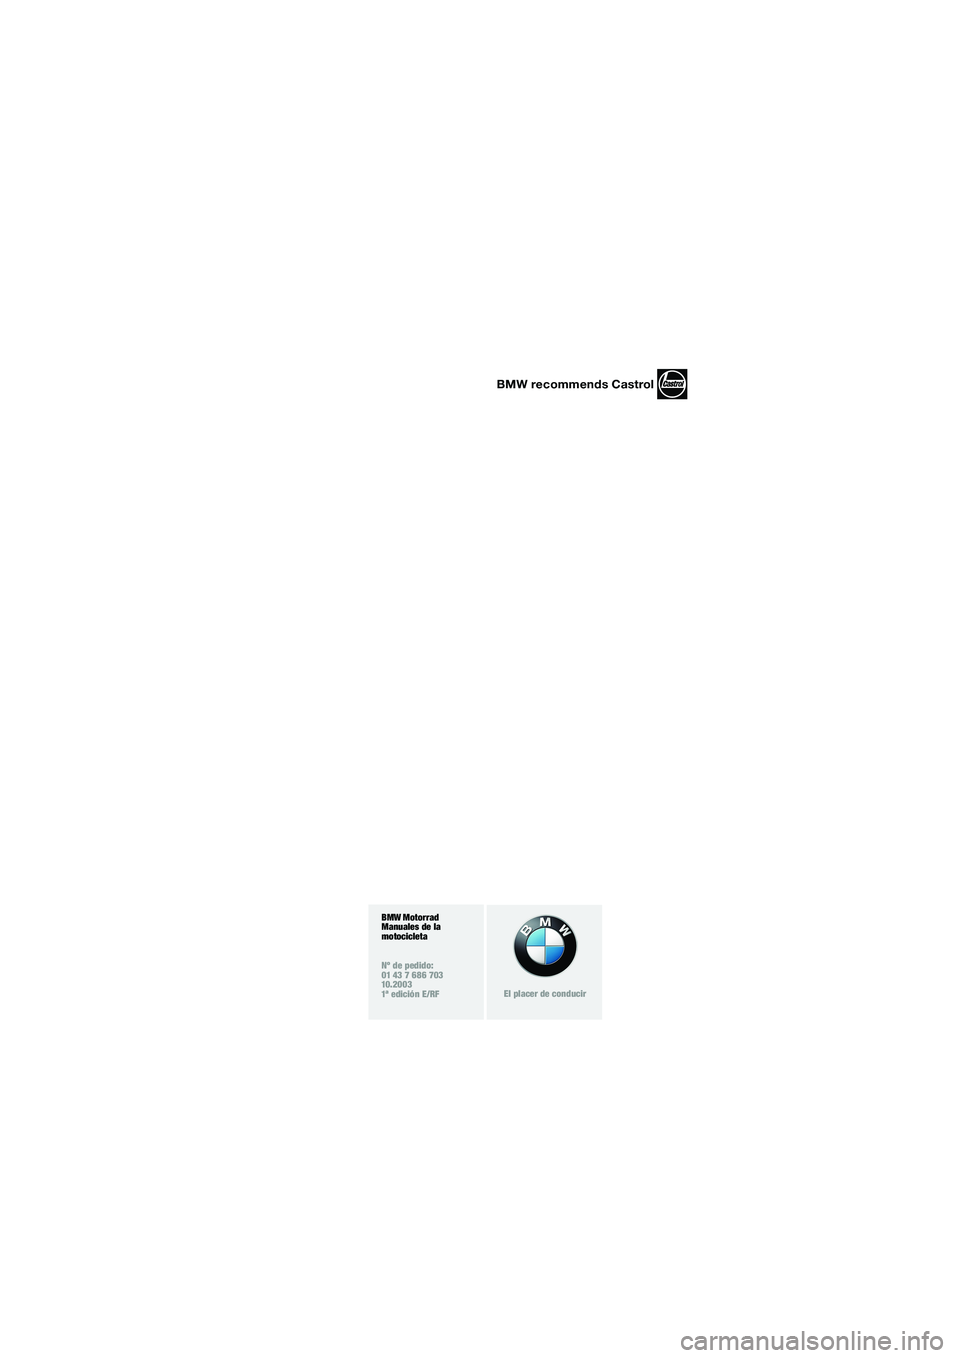 BMW MOTORRAD F 650 CS 2003  Manual de instrucciones (in Spanish) 1
BMW recommends Castrol
BMW Motorrad
Manuales de la 
motocicleta
Nº de pedido:
01 43 7 686 703
10.2003
1ª edición E/RF
El placer de conducir
10K14bke2.book  Seite 3  Montag, 15. September 2003  12